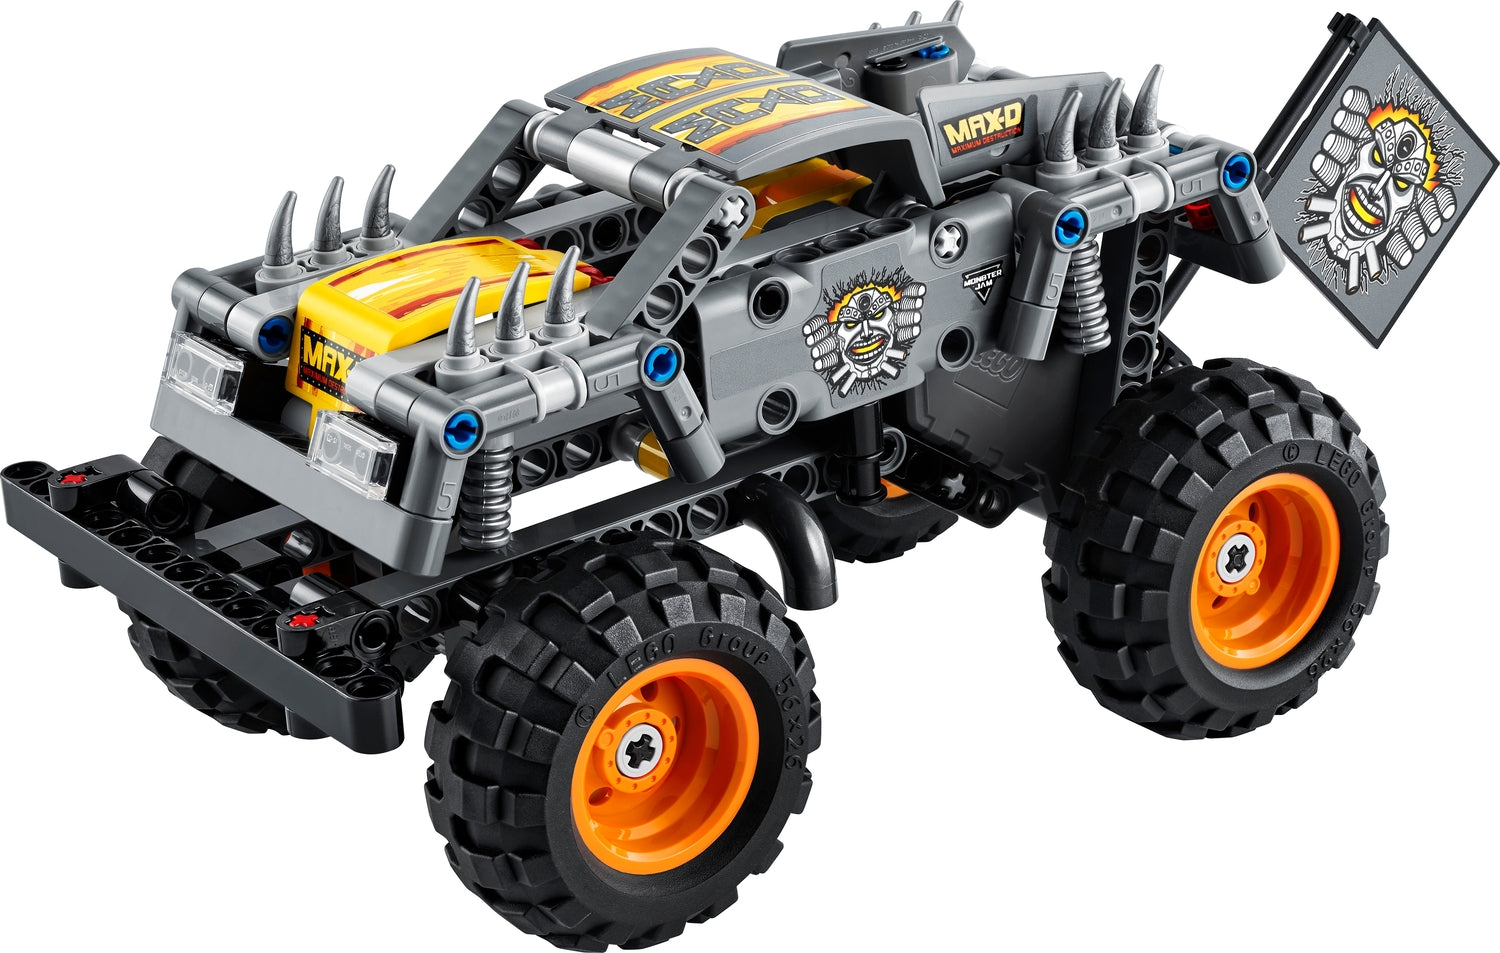 LEGO Technic: Monster Jam Max-D